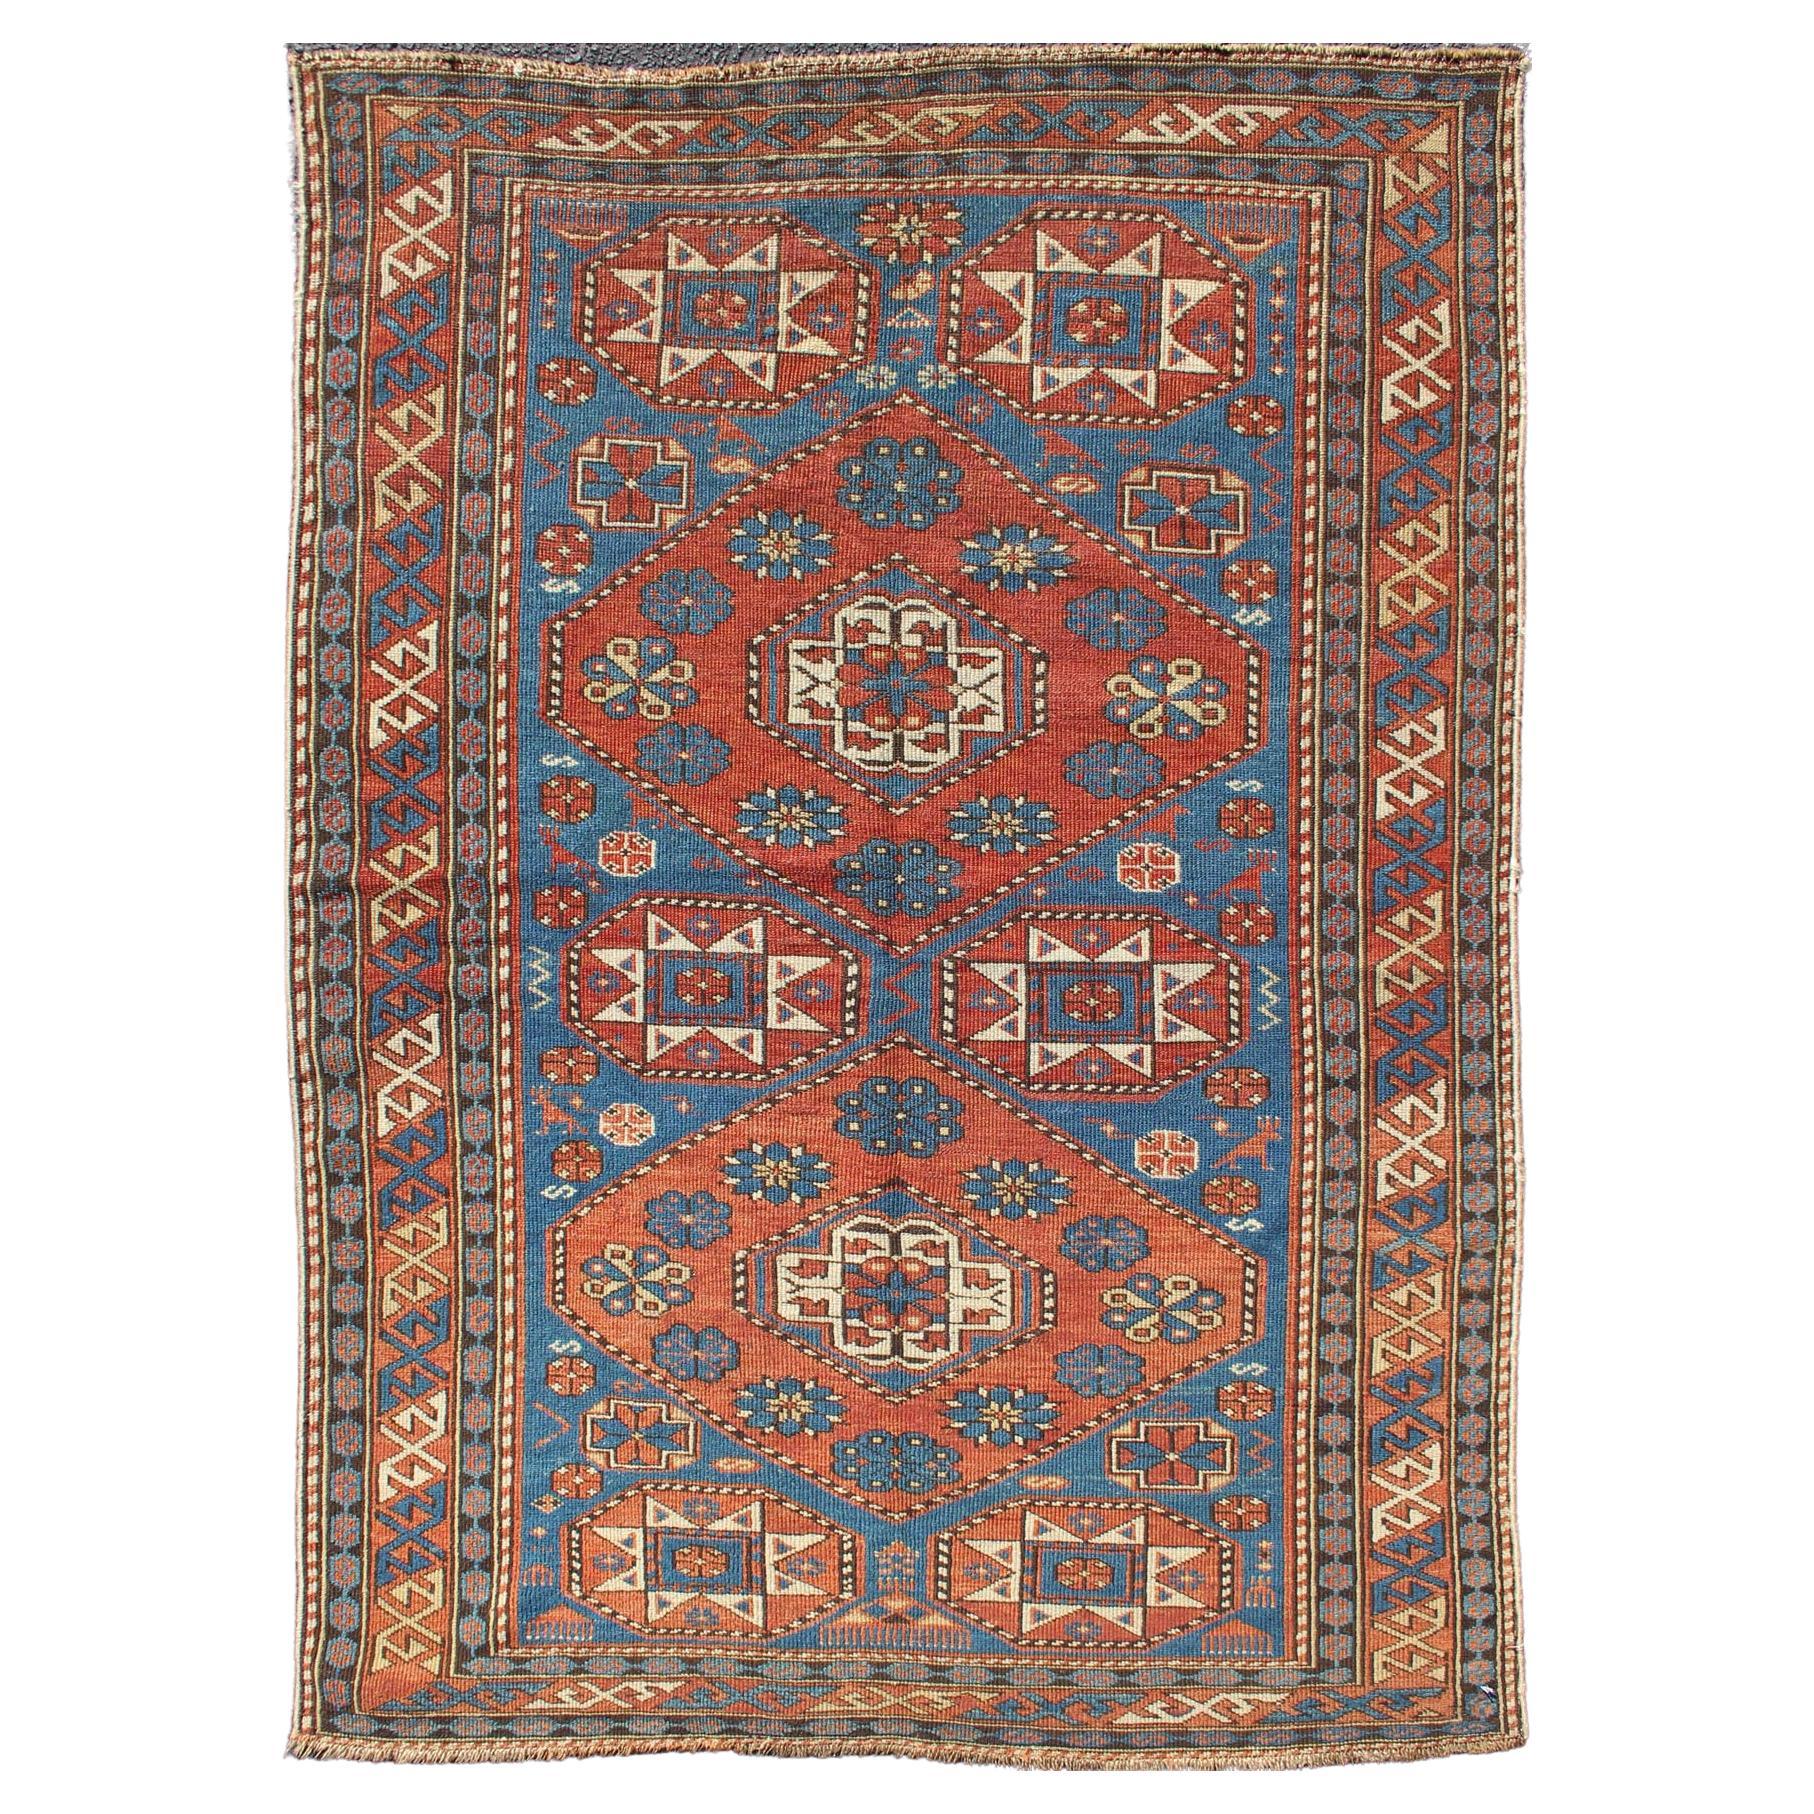  Antique Caucasian Shirvan Rug with Geometric Design in Brunt Orange and Blue 